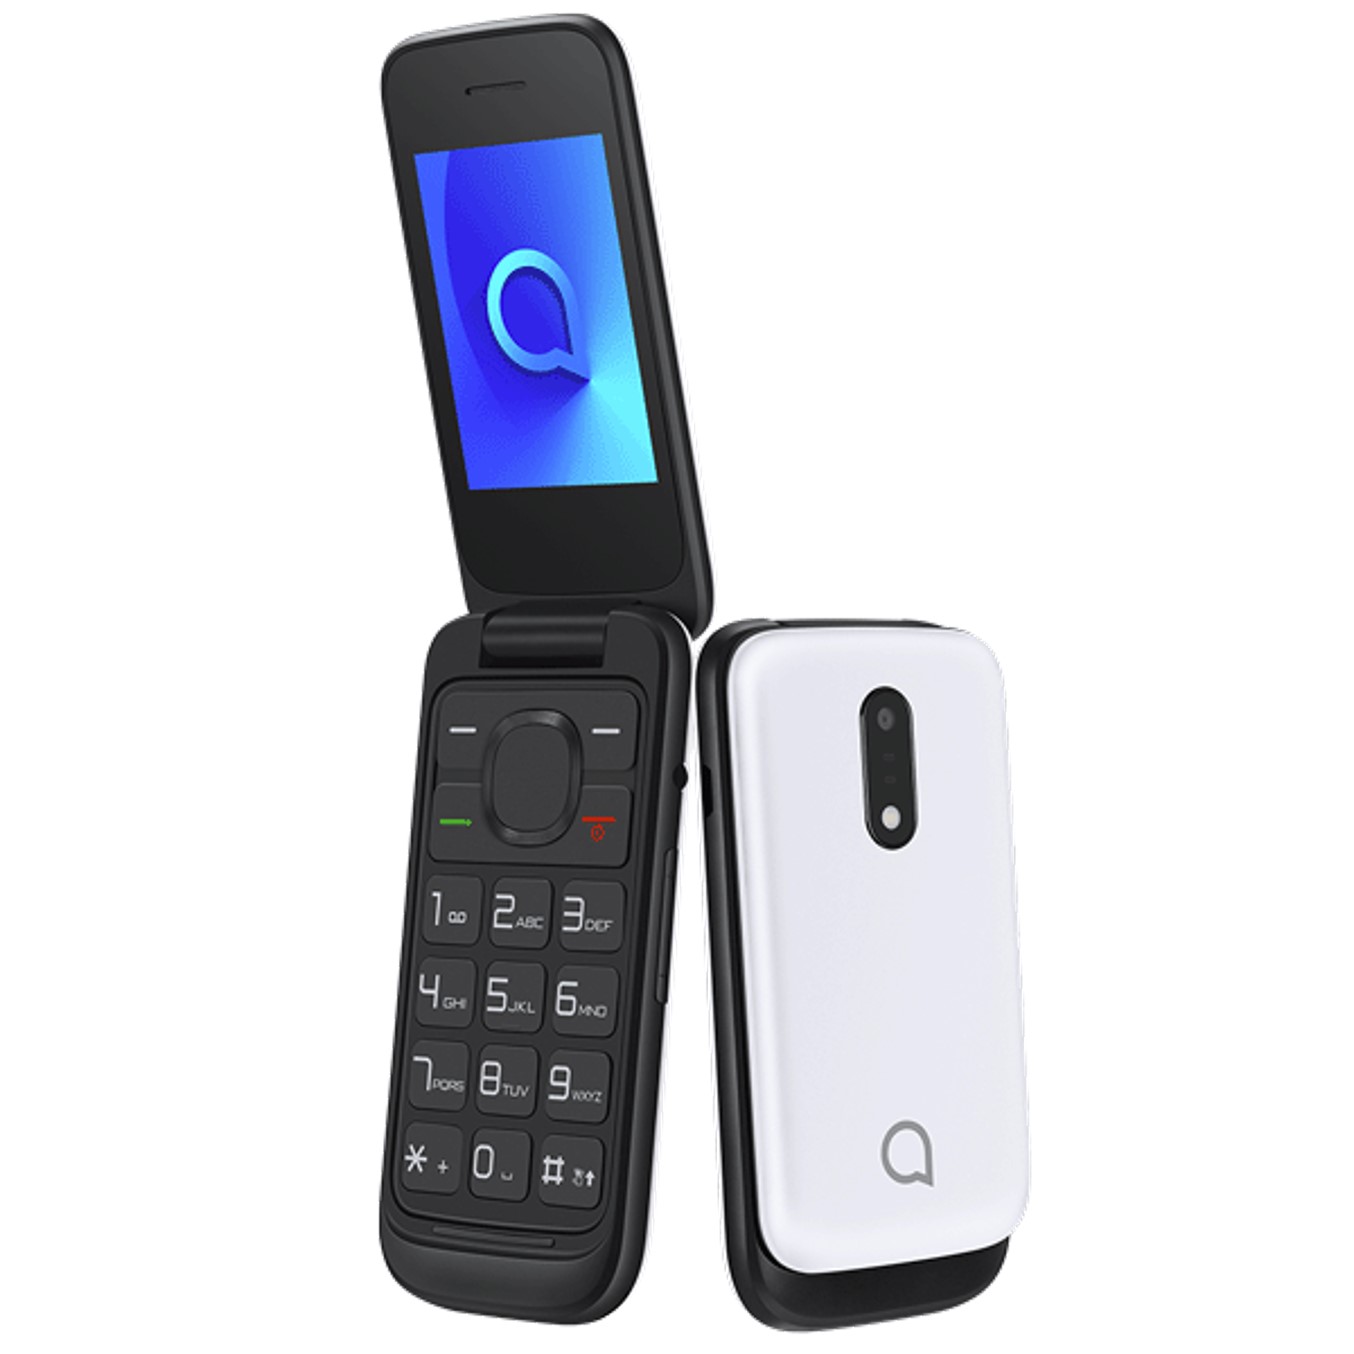 Telefono movil alcatel 2053 blanco - 2.4pulgadas - 4mb rom - 4mb ram - dual sim